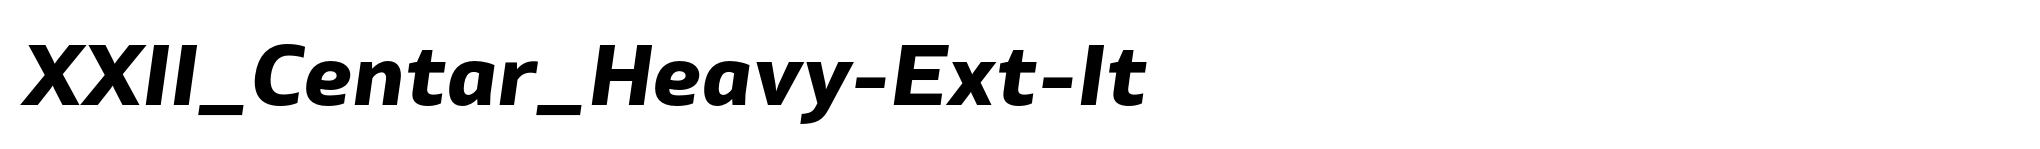 XXII_Centar_Heavy-Ext-It image